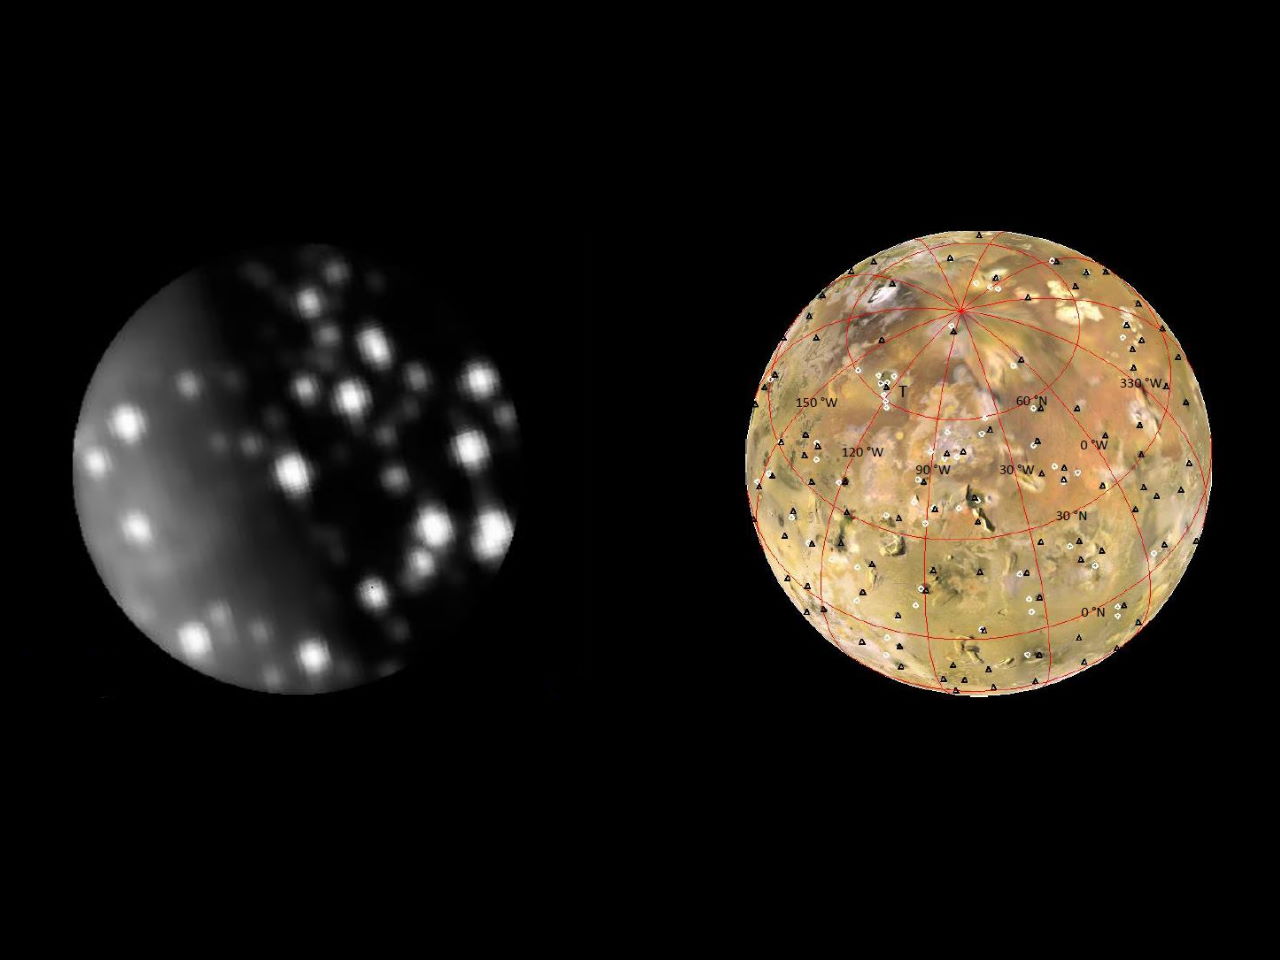 Гарячі точки на Іо, які виявив інструмент&amp;nbsp;JIRAM під час одного з наближень&amp;nbsp;«Юнони» до супутника (зліва), і мапа вулканів на Іо, яку склали астрономи.&amp;nbsp;Ashley Gerard Davies et al. / arXiv, 2023